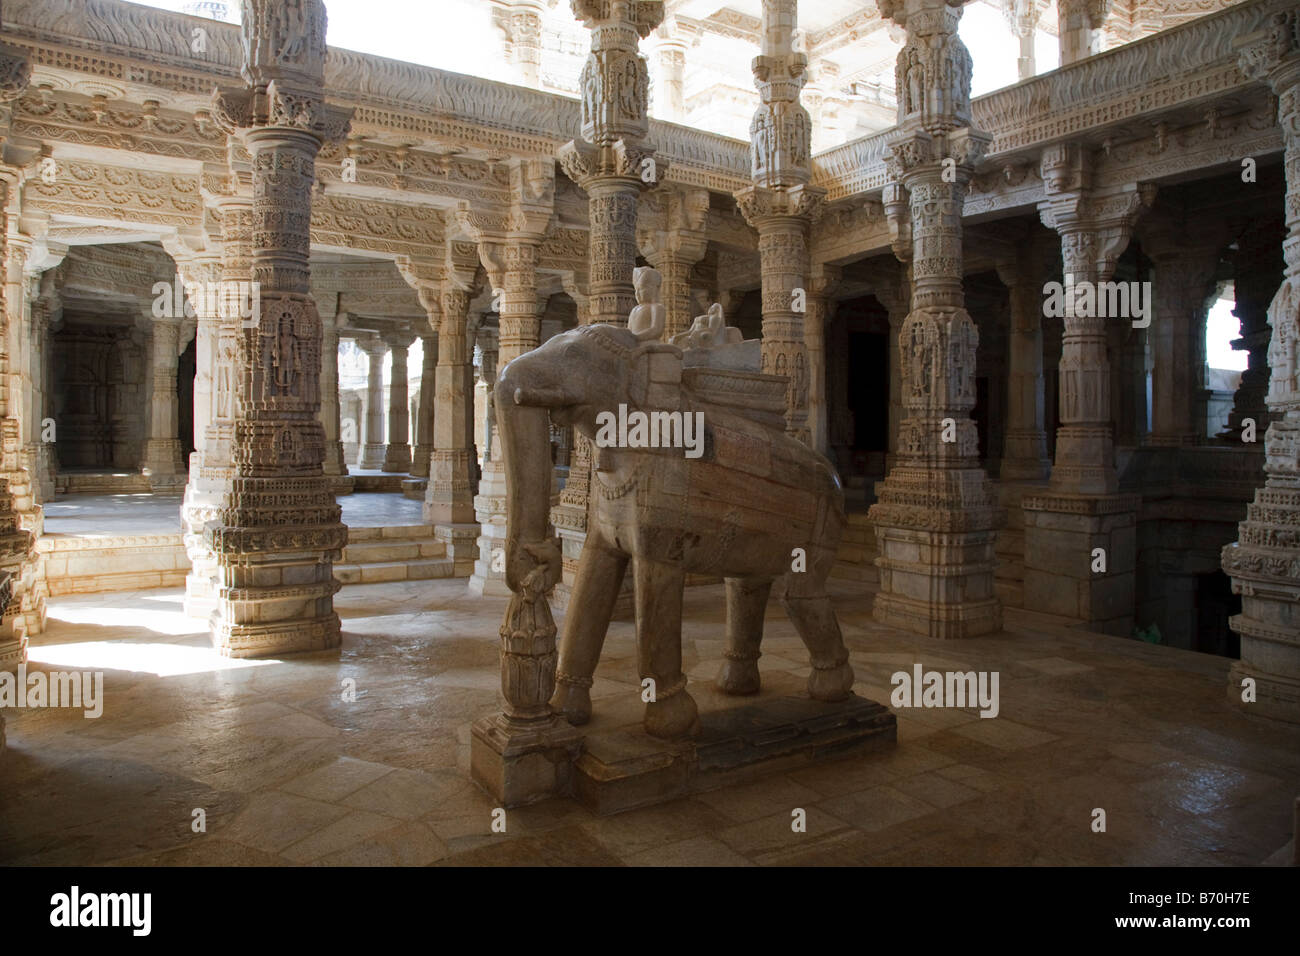 Una scultura di elefante nella sala principale del Tempio di Jain a Ranakpur, India Foto Stock